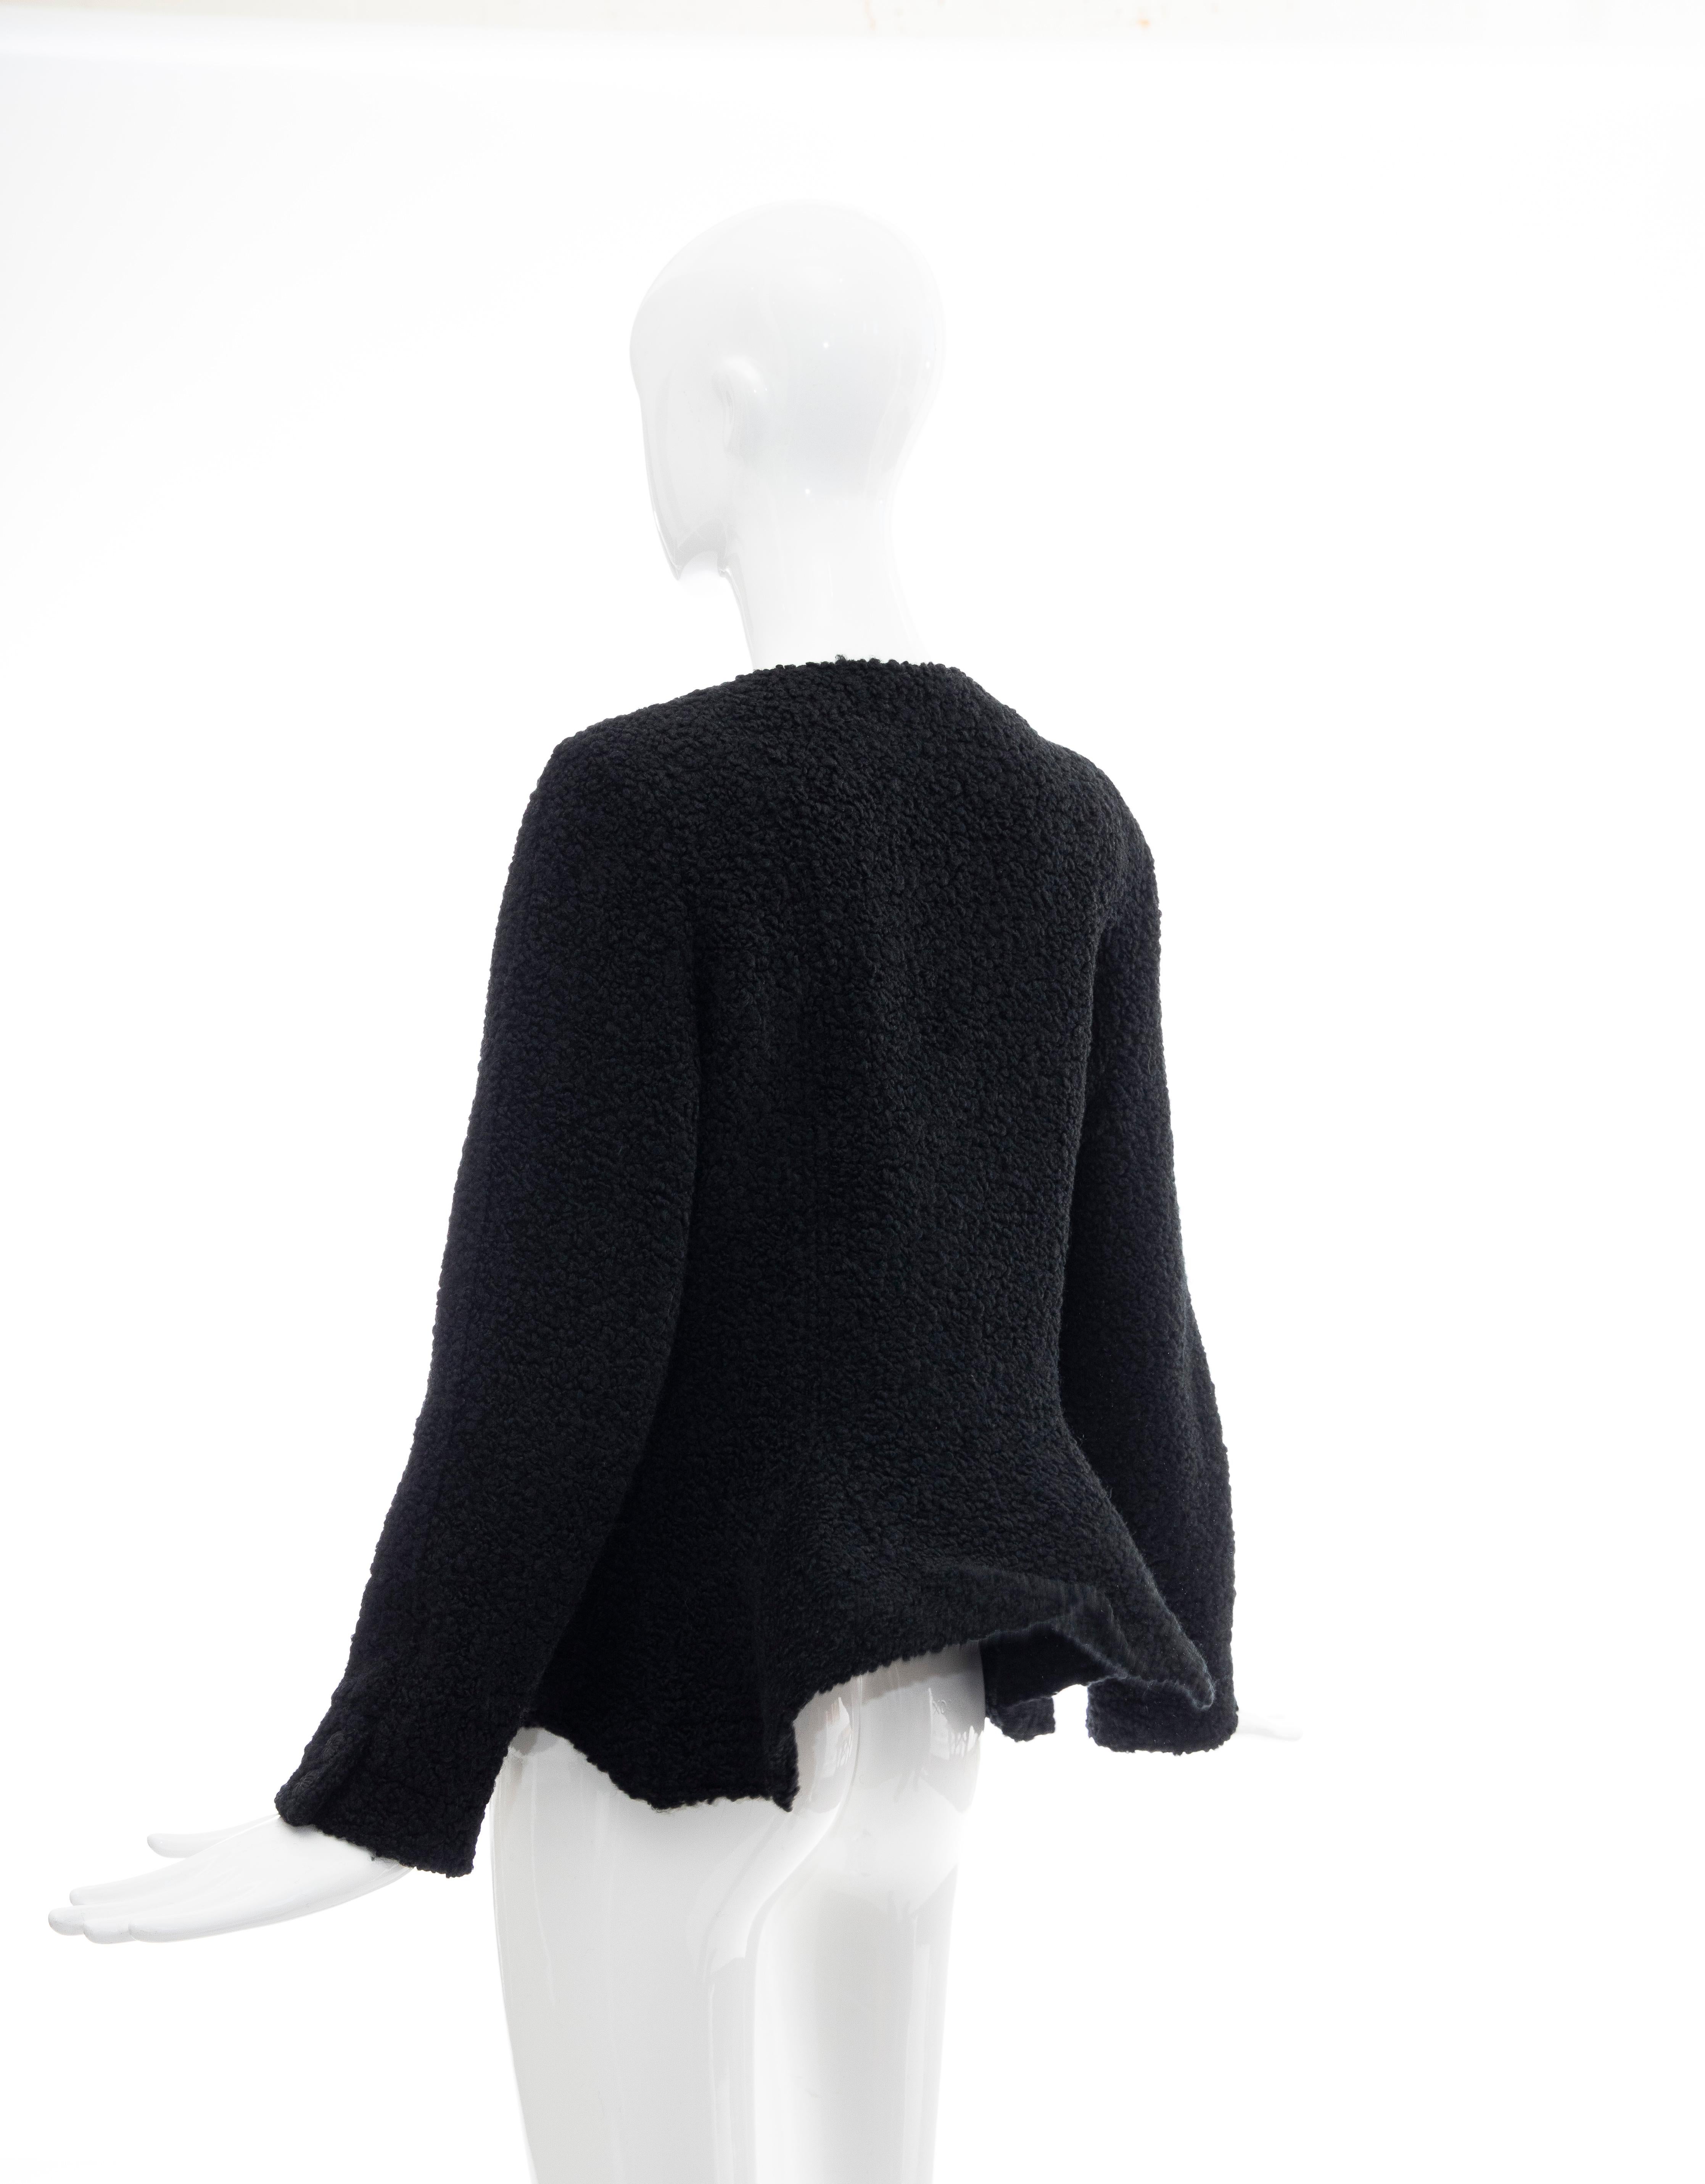 Jean Muir Studio Black Faux Persian Lamb Jacket, Circa: 1980's For Sale 4